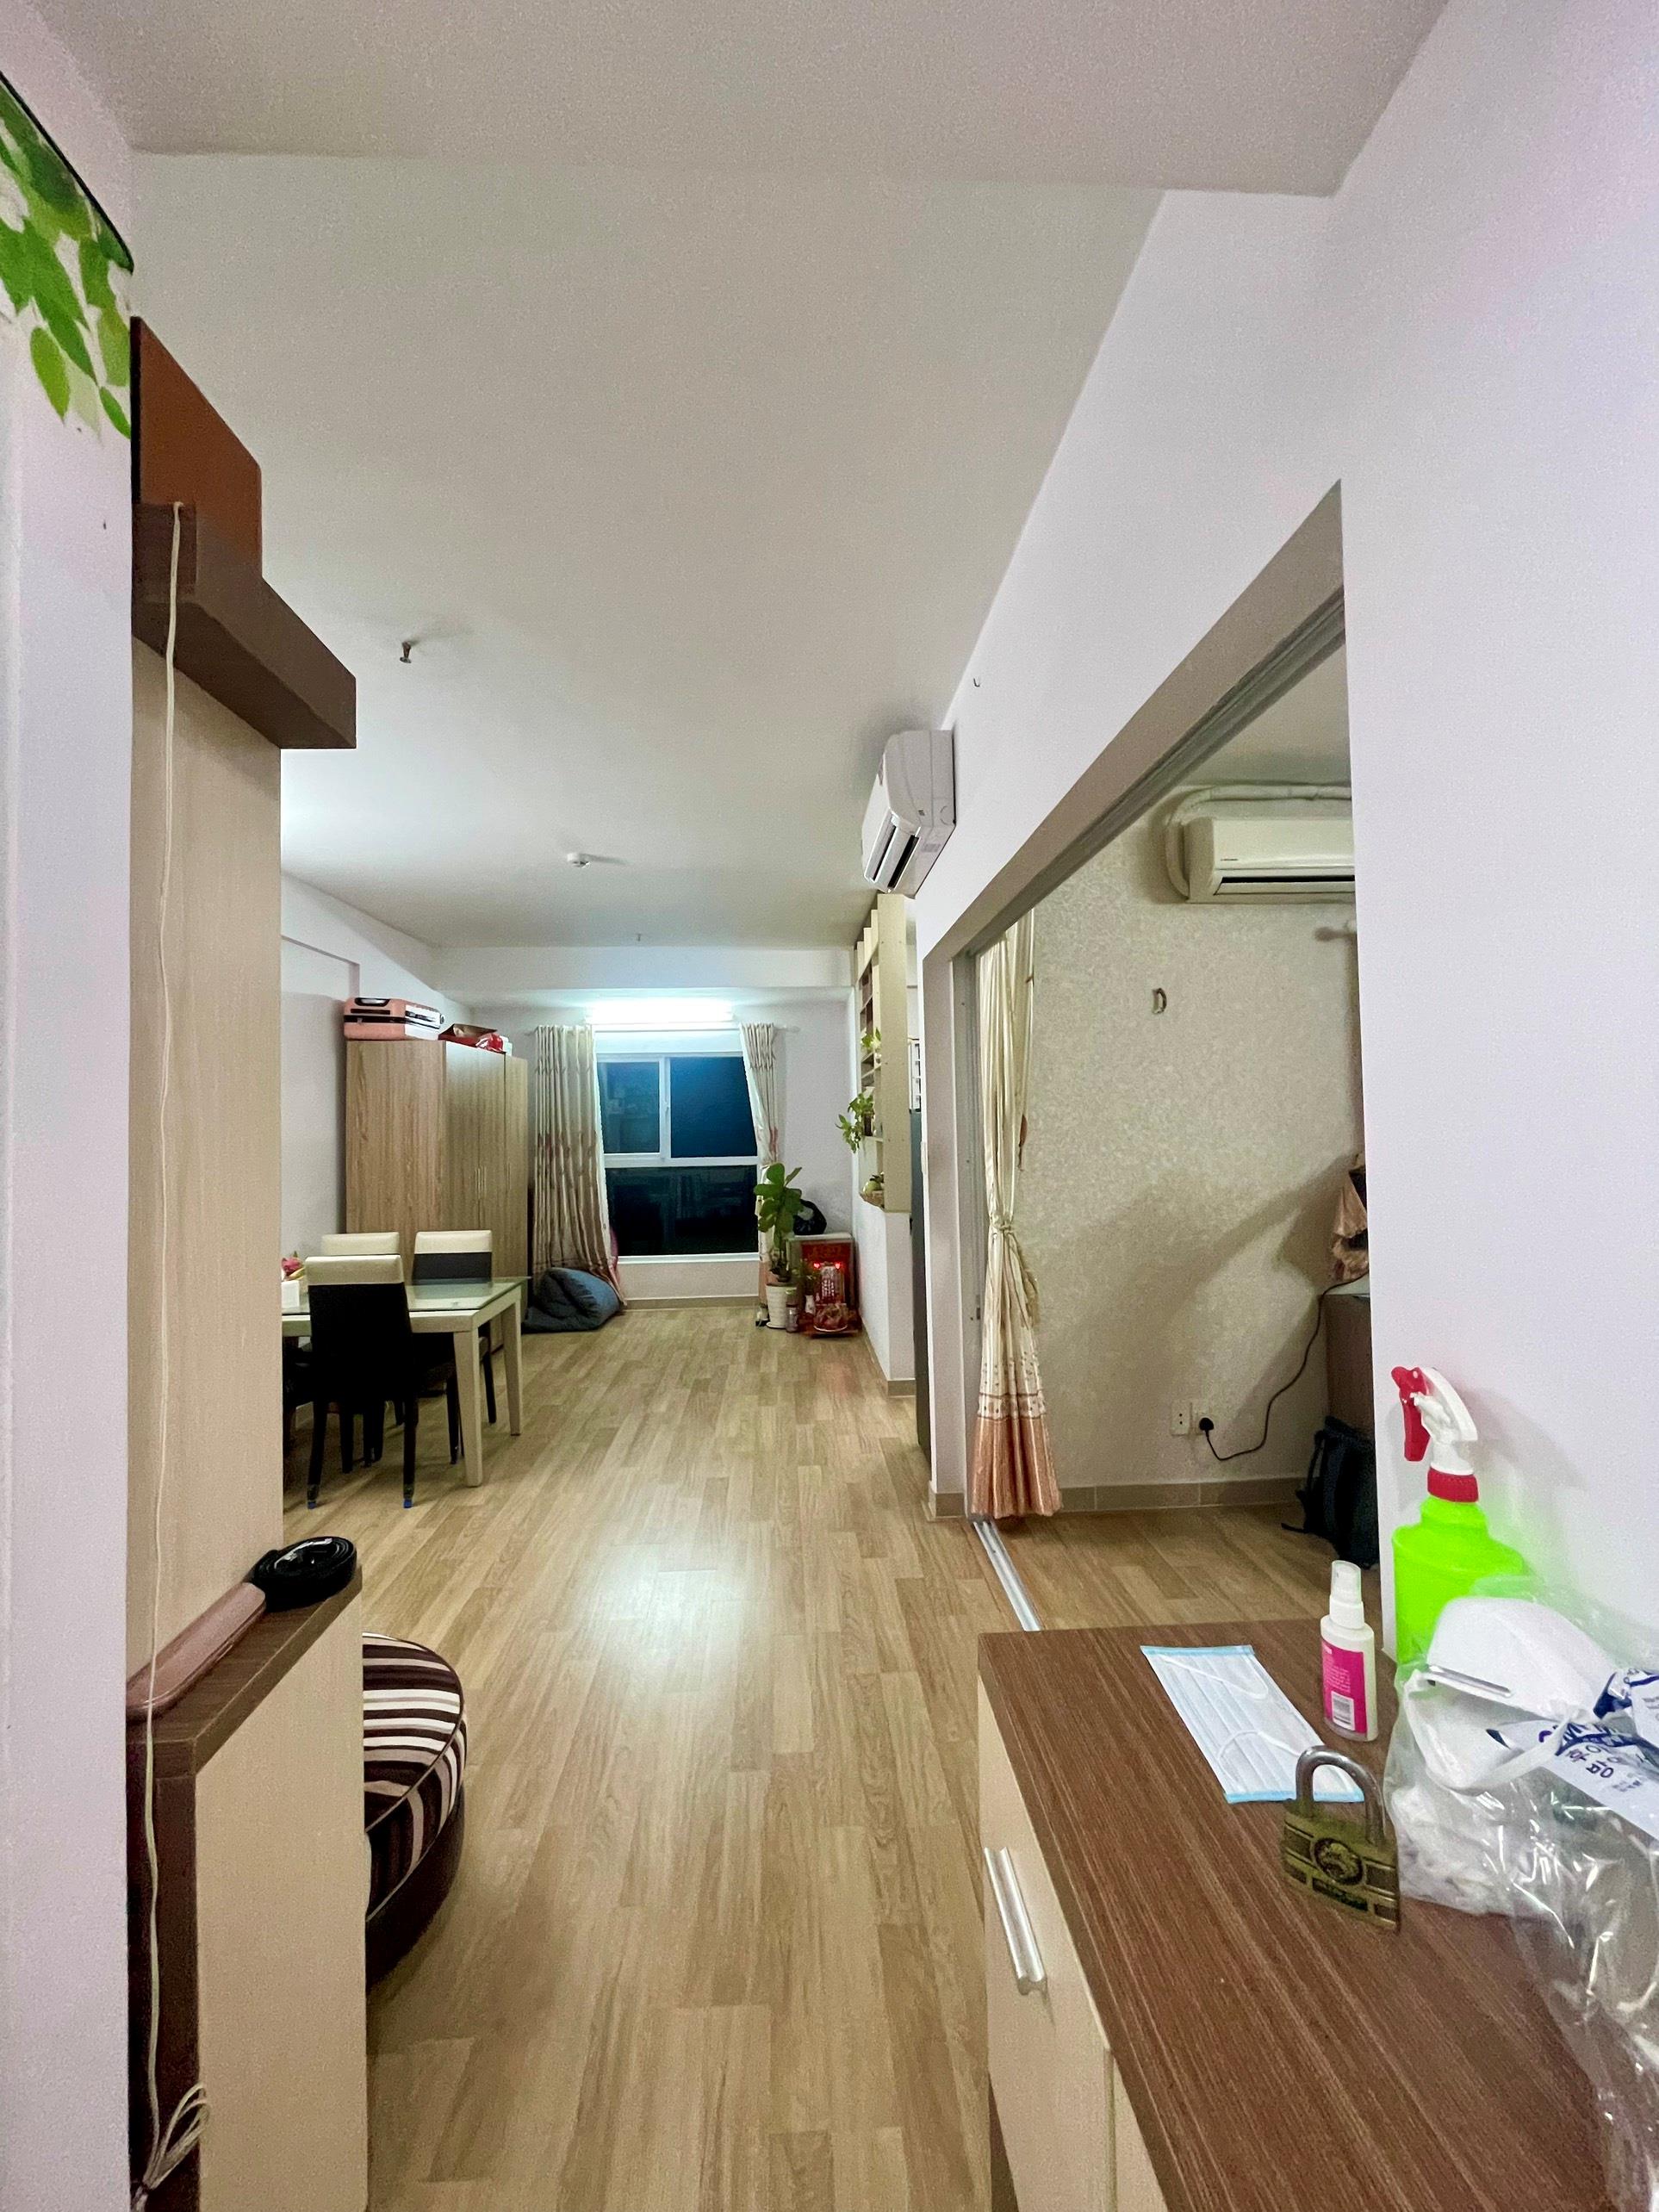 Bán căn hộ quận Bình Tân 1 phòng ngủ giá rẻ 0902399788